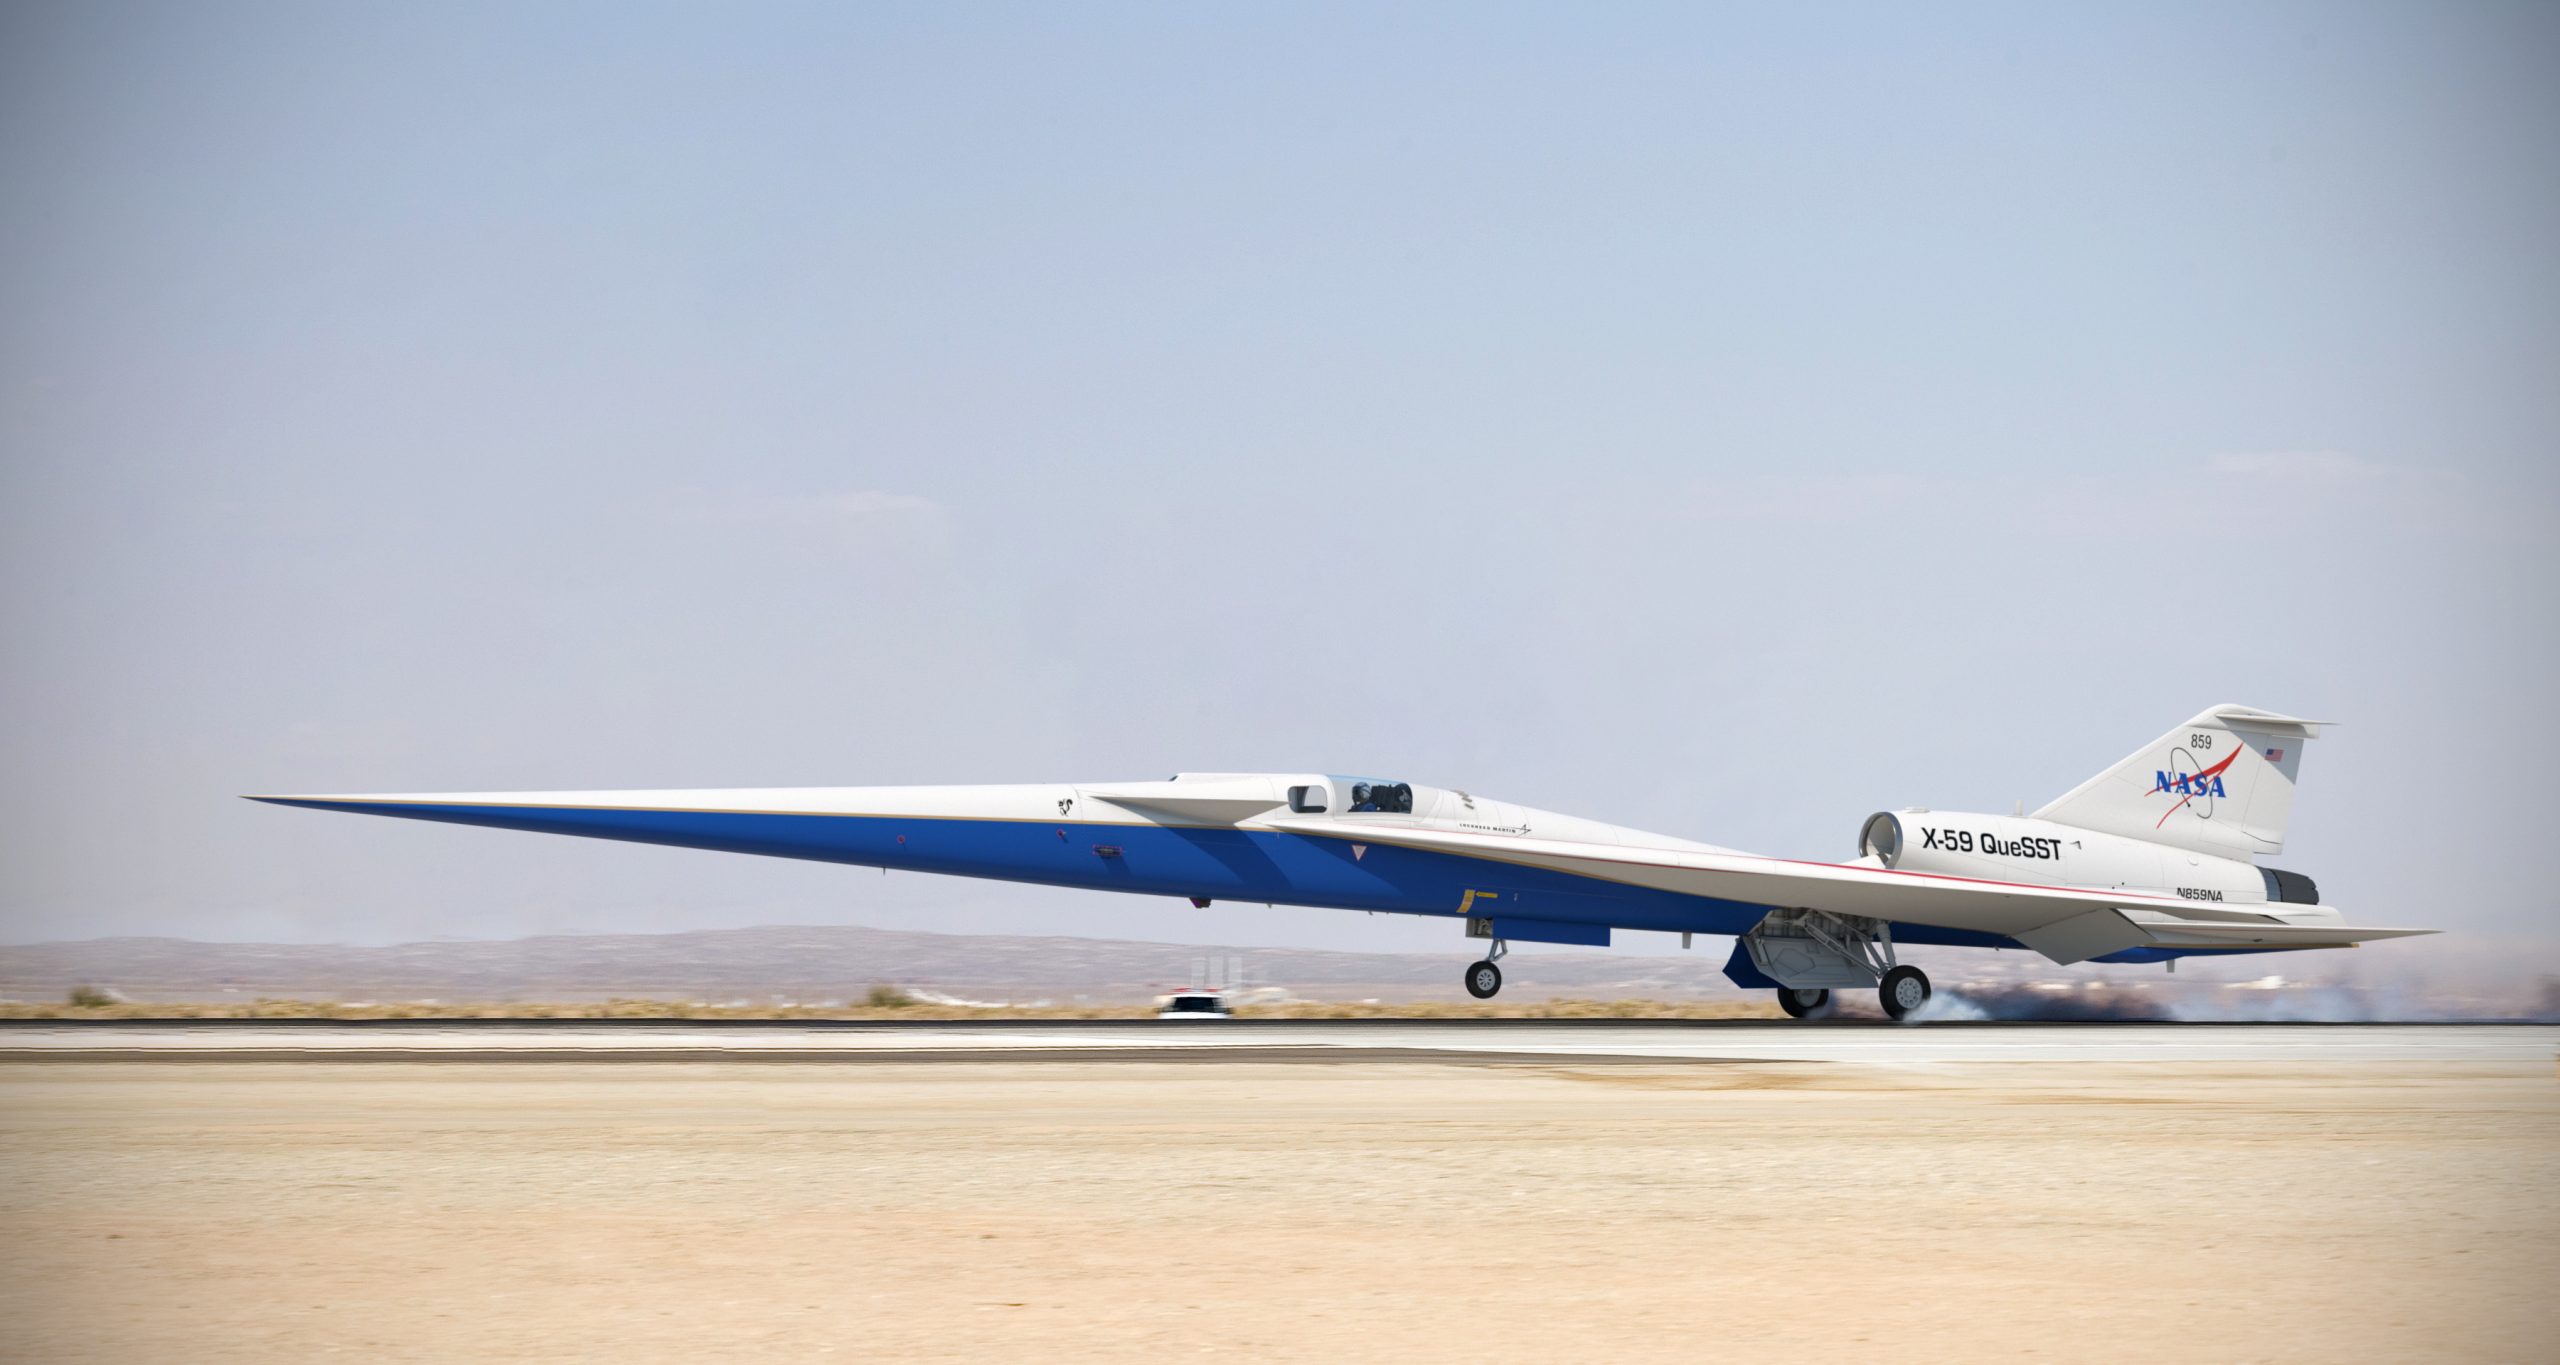 NASAk Concorderen oinordetza eraiki zuen. X-59 hurrengo urtean prest egon daiteke